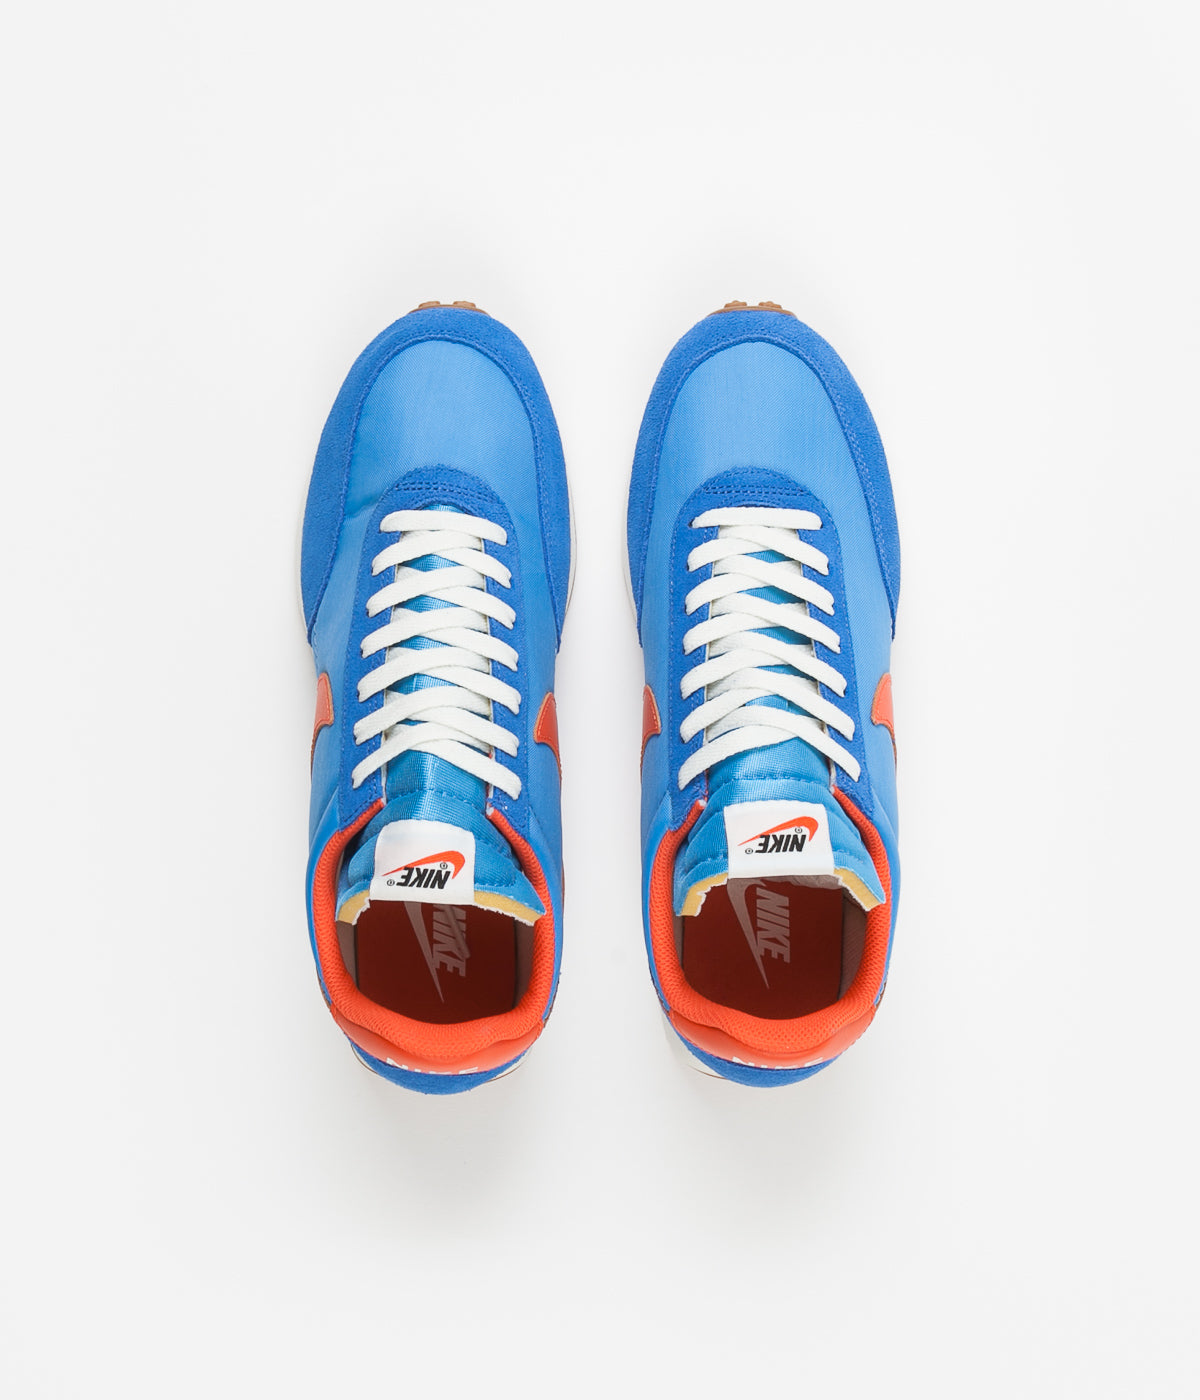 blue orange nike shoes